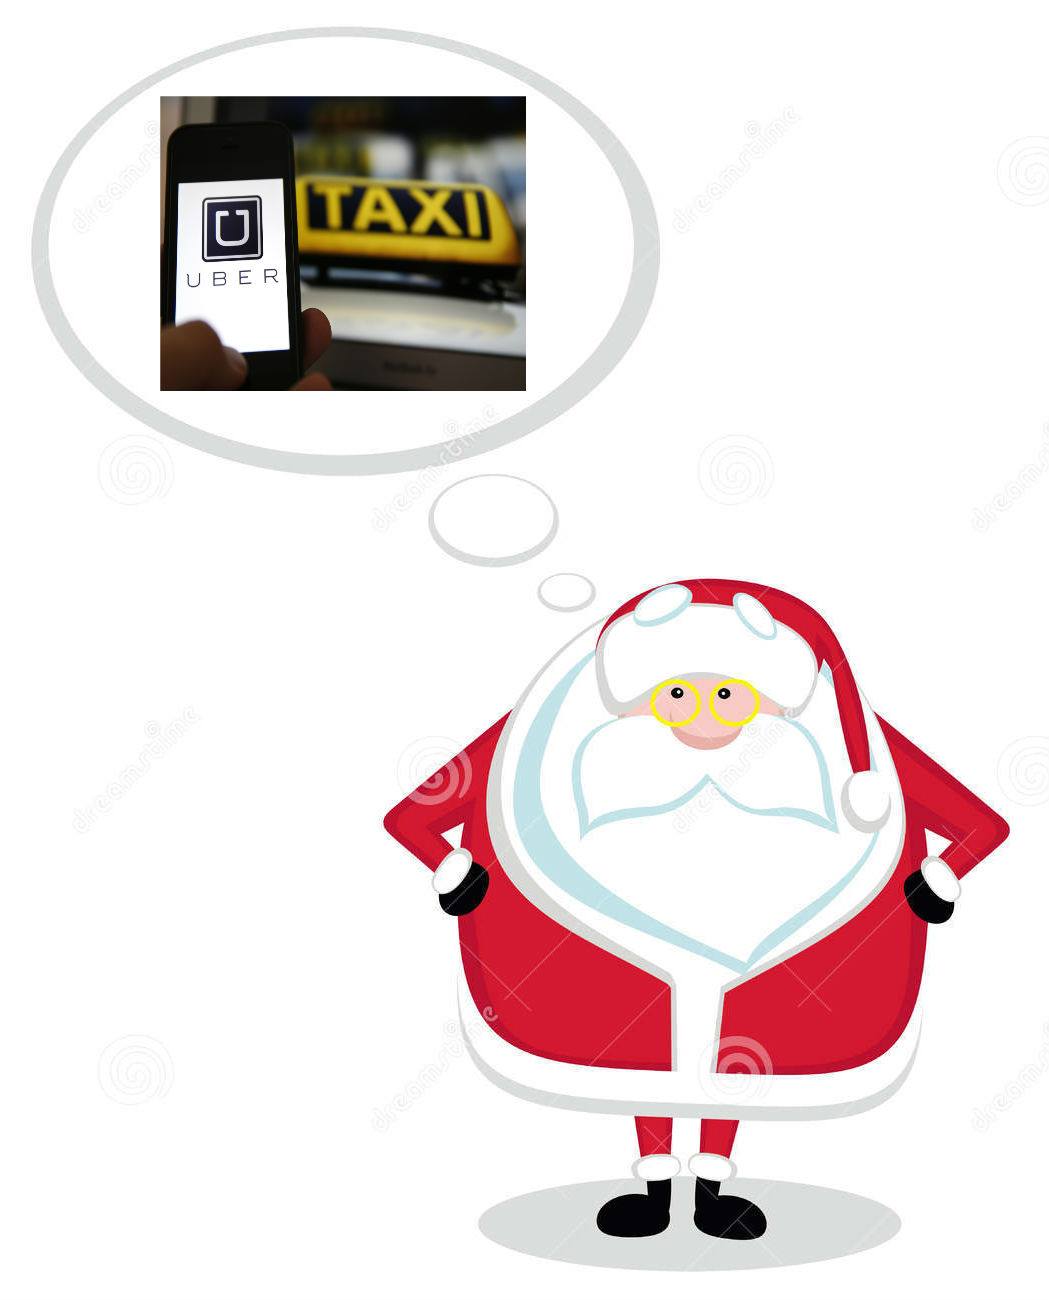 Moș Crăciun se gândește la Uber vs Taxi